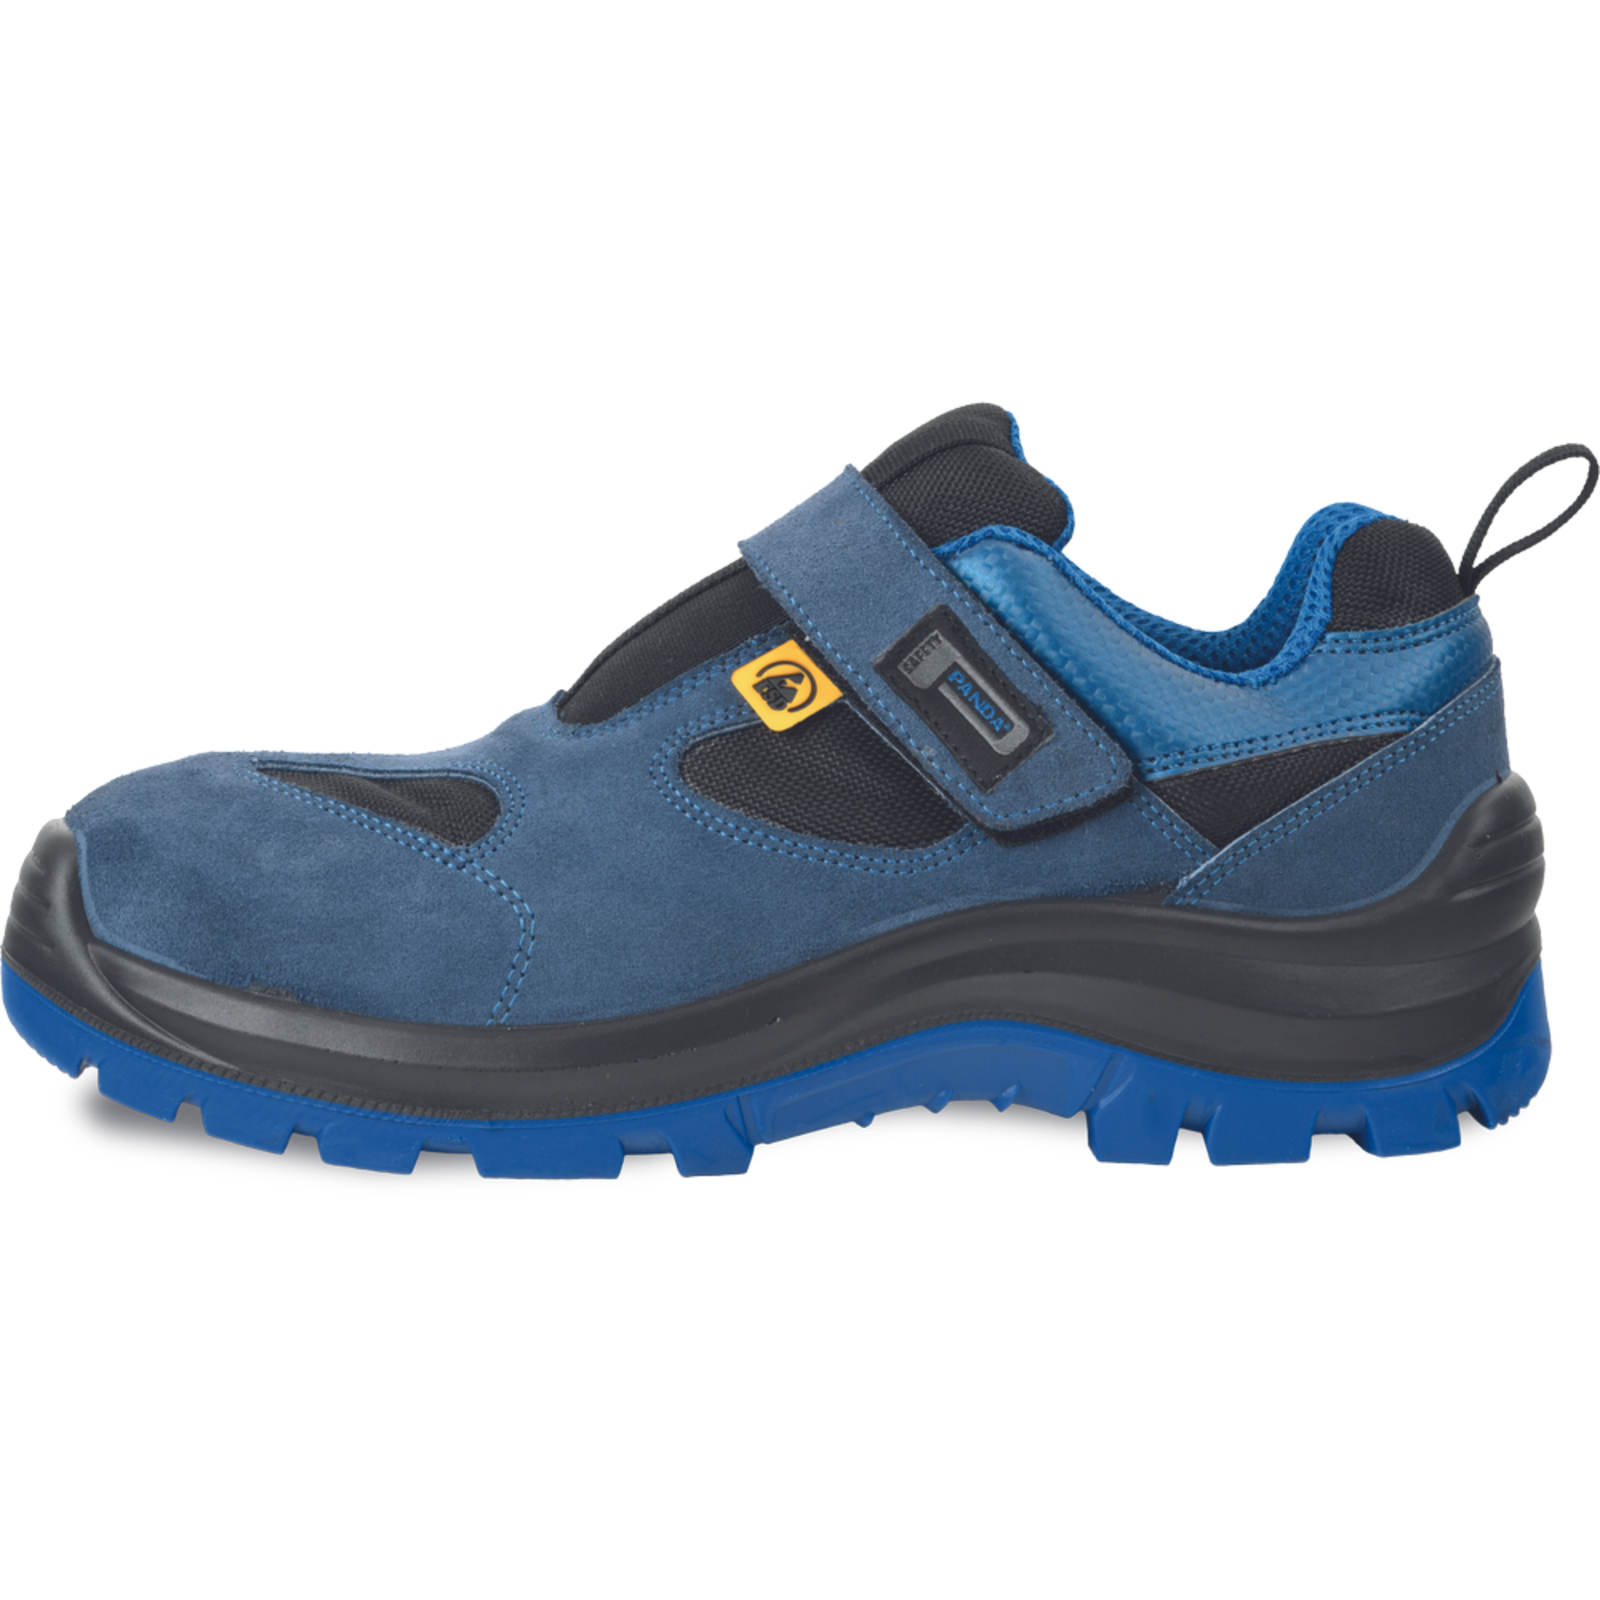 Bezpečnostné pracovné sandále Panda Wilk MF ESD S1P SRC - veľkosť: 45, farba: modrá/čierna